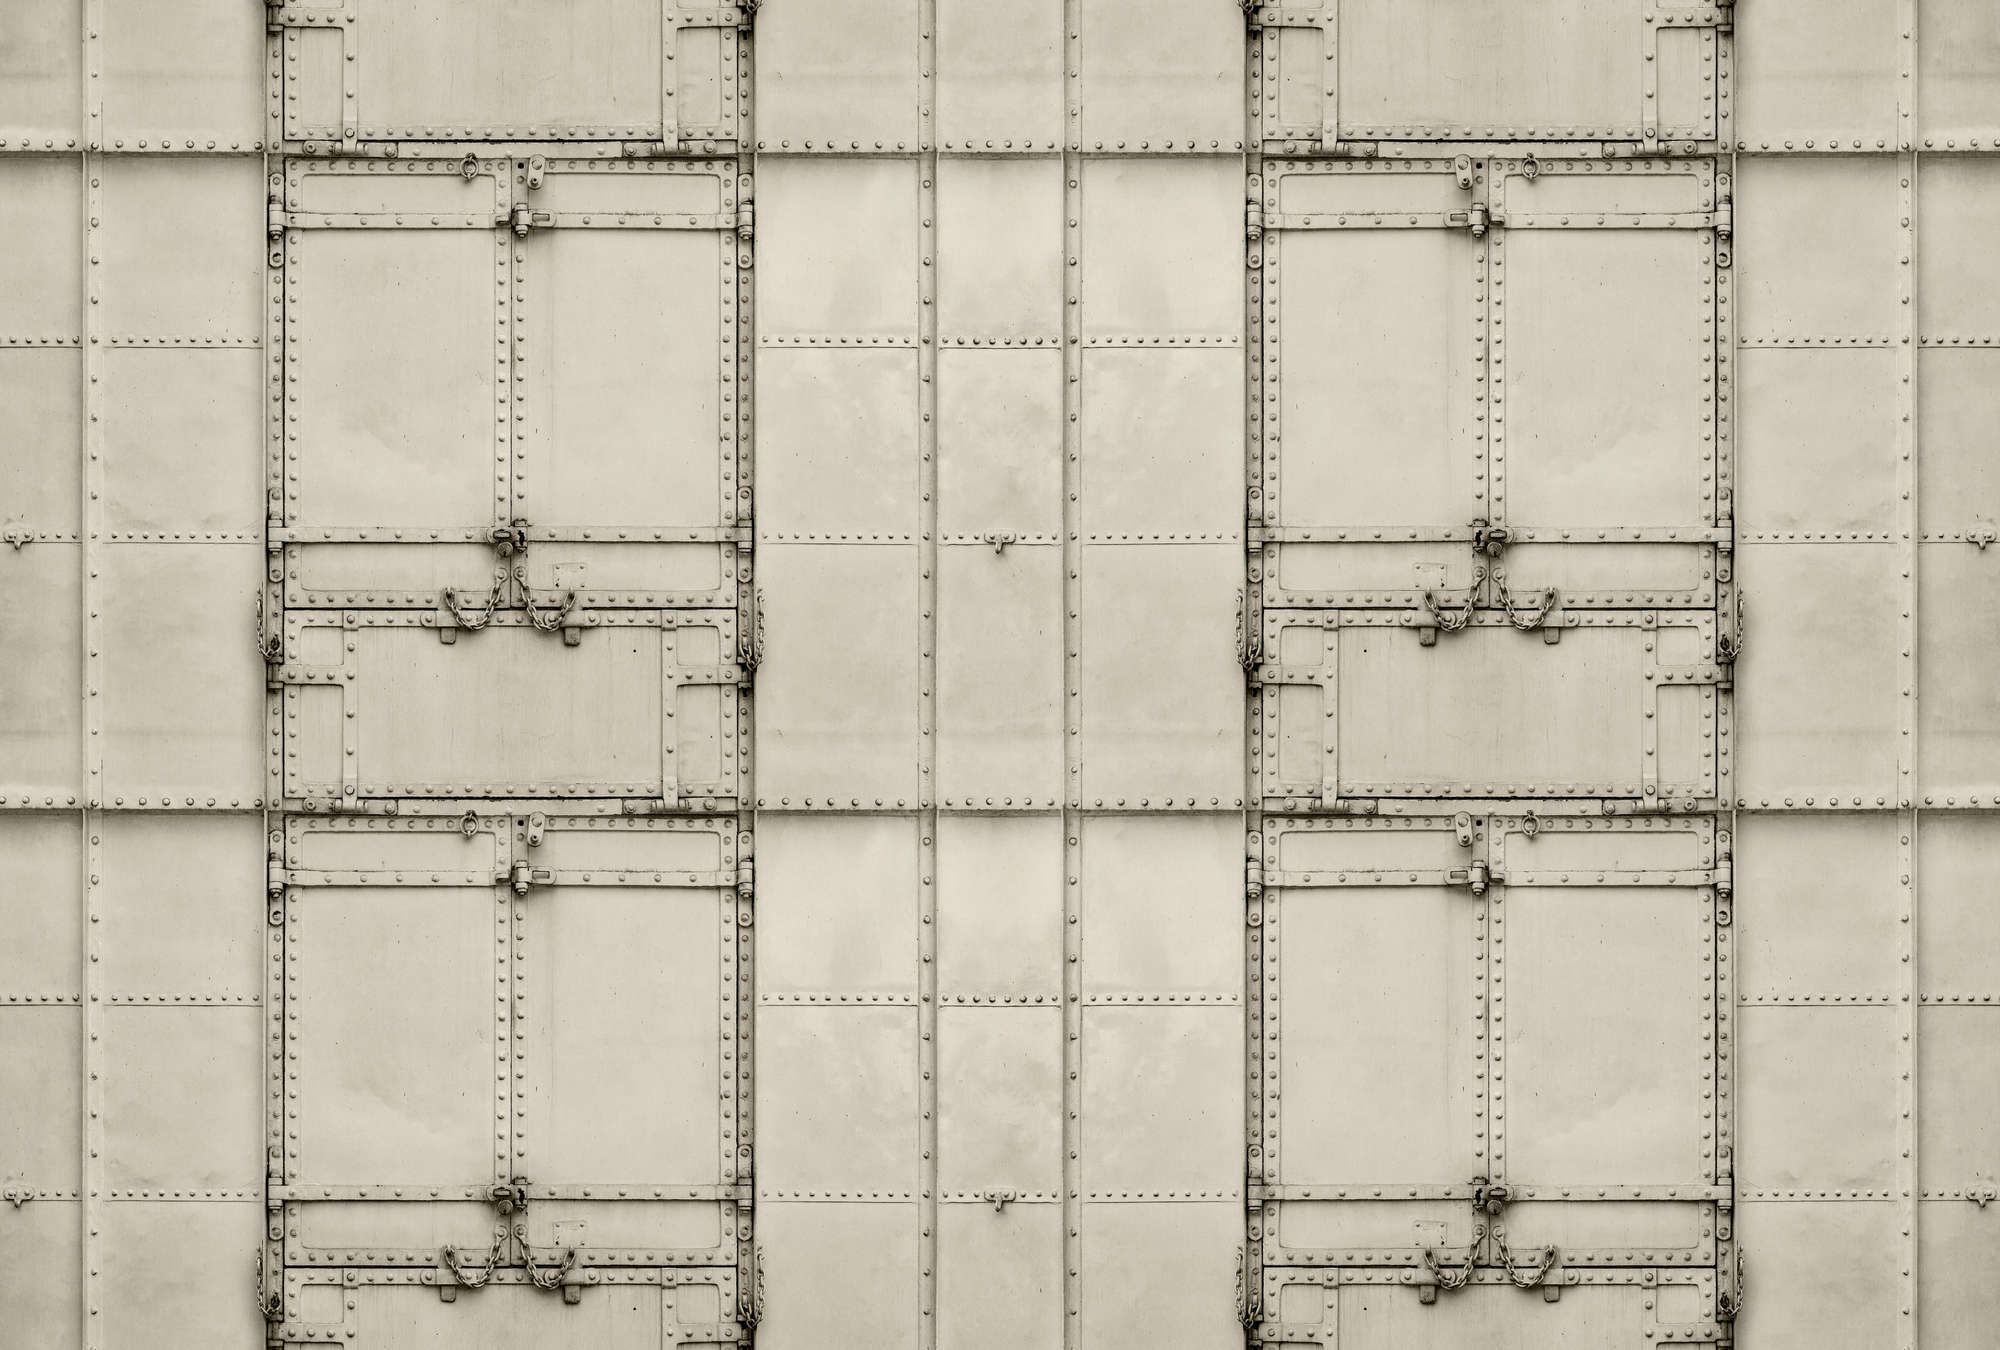             Fotomurali »madurai« - Disegno patchwork con piastre di metallo con rivetti e catene - Materiali non tessuto leggermente strutturato
        